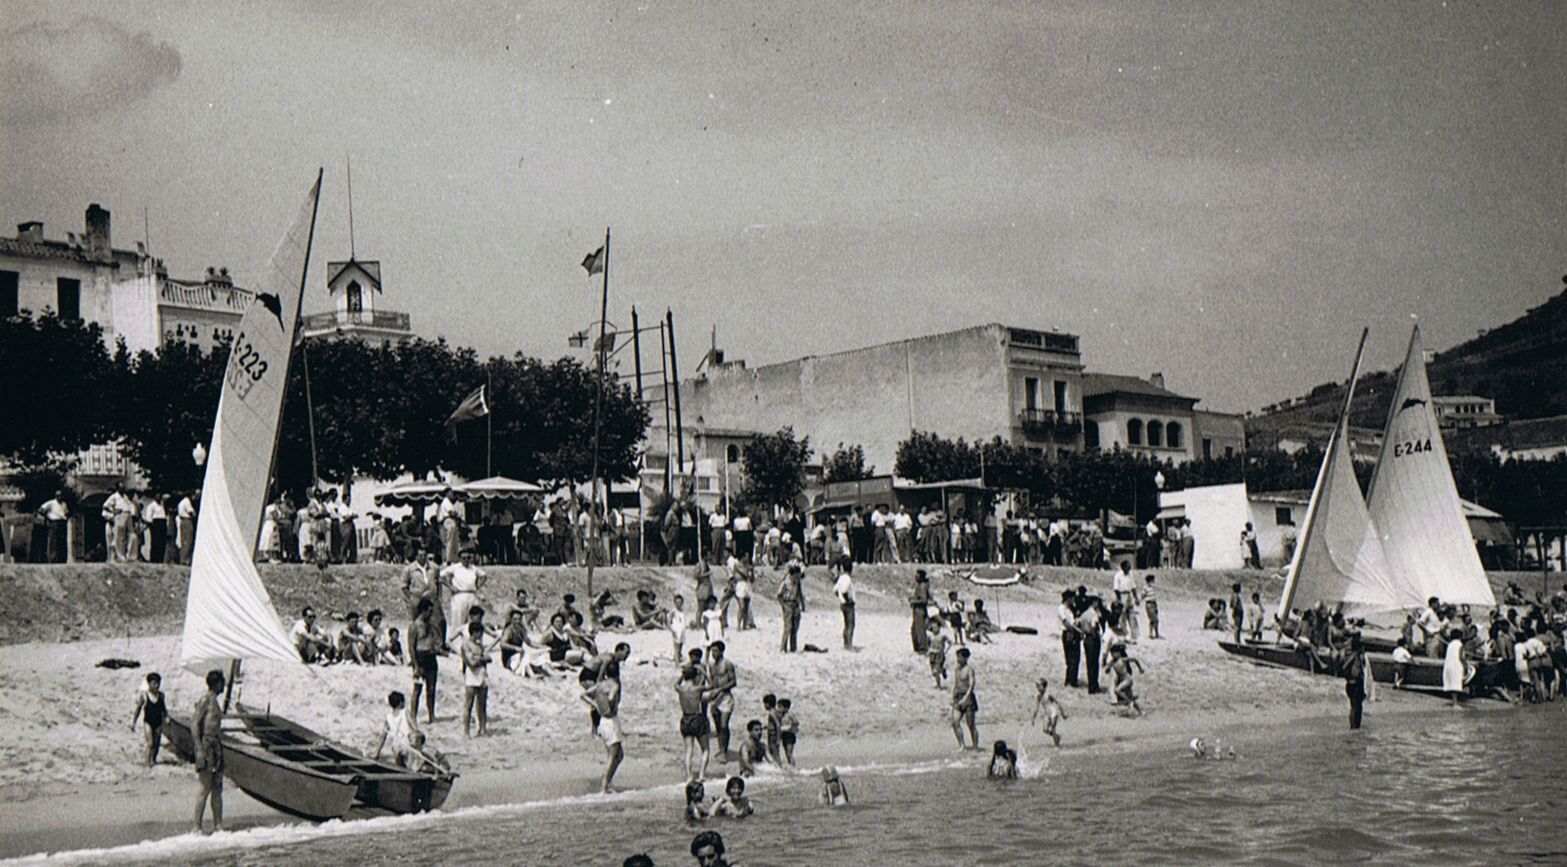 El Club de Vela Blanes va organitzar dues edicions del Campionat d'Espanya de Patins (1951 i 1955) 